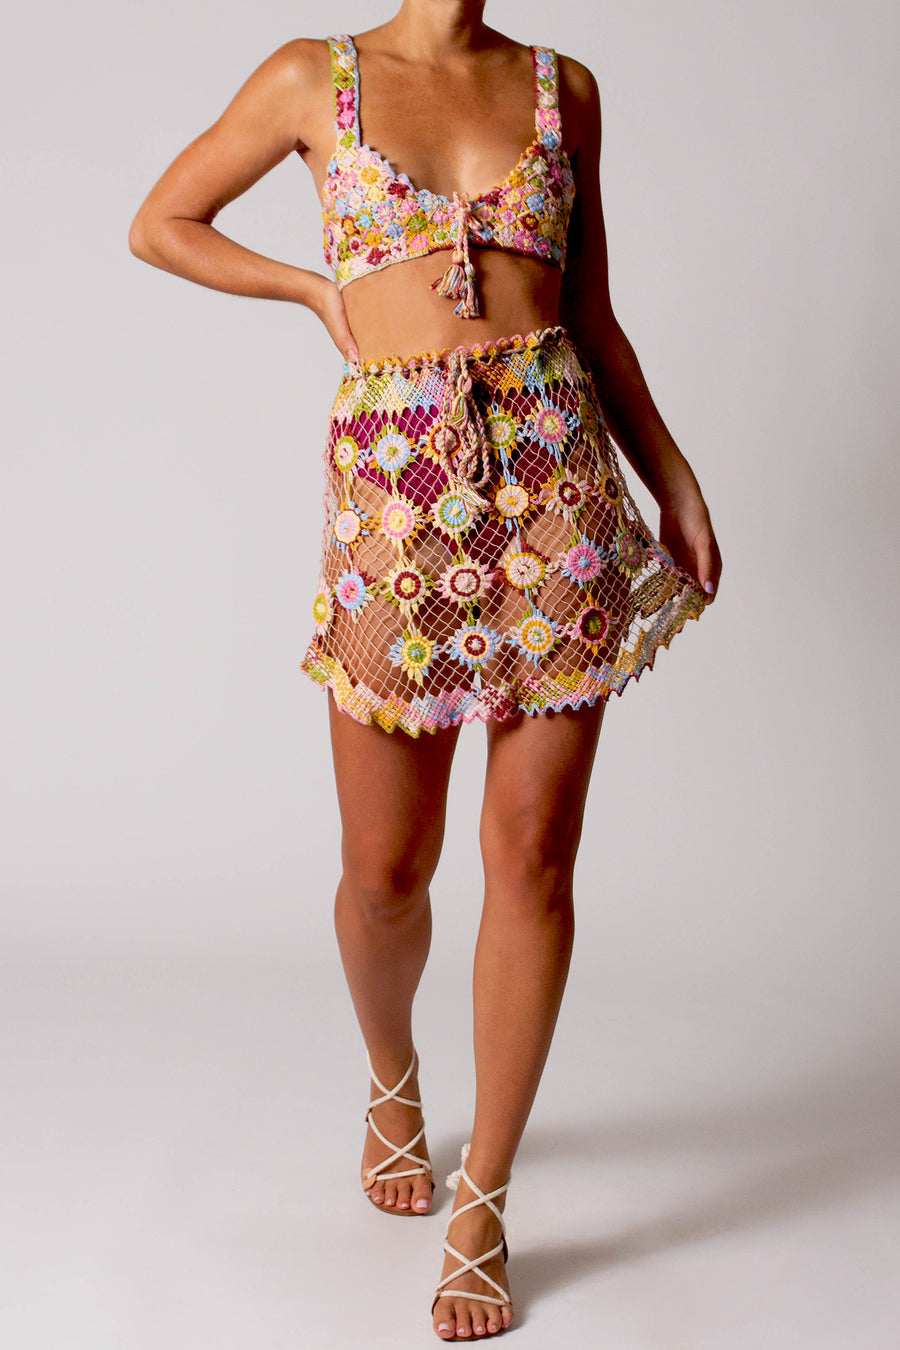 Telma Filet Lace Skirt in Lollipop